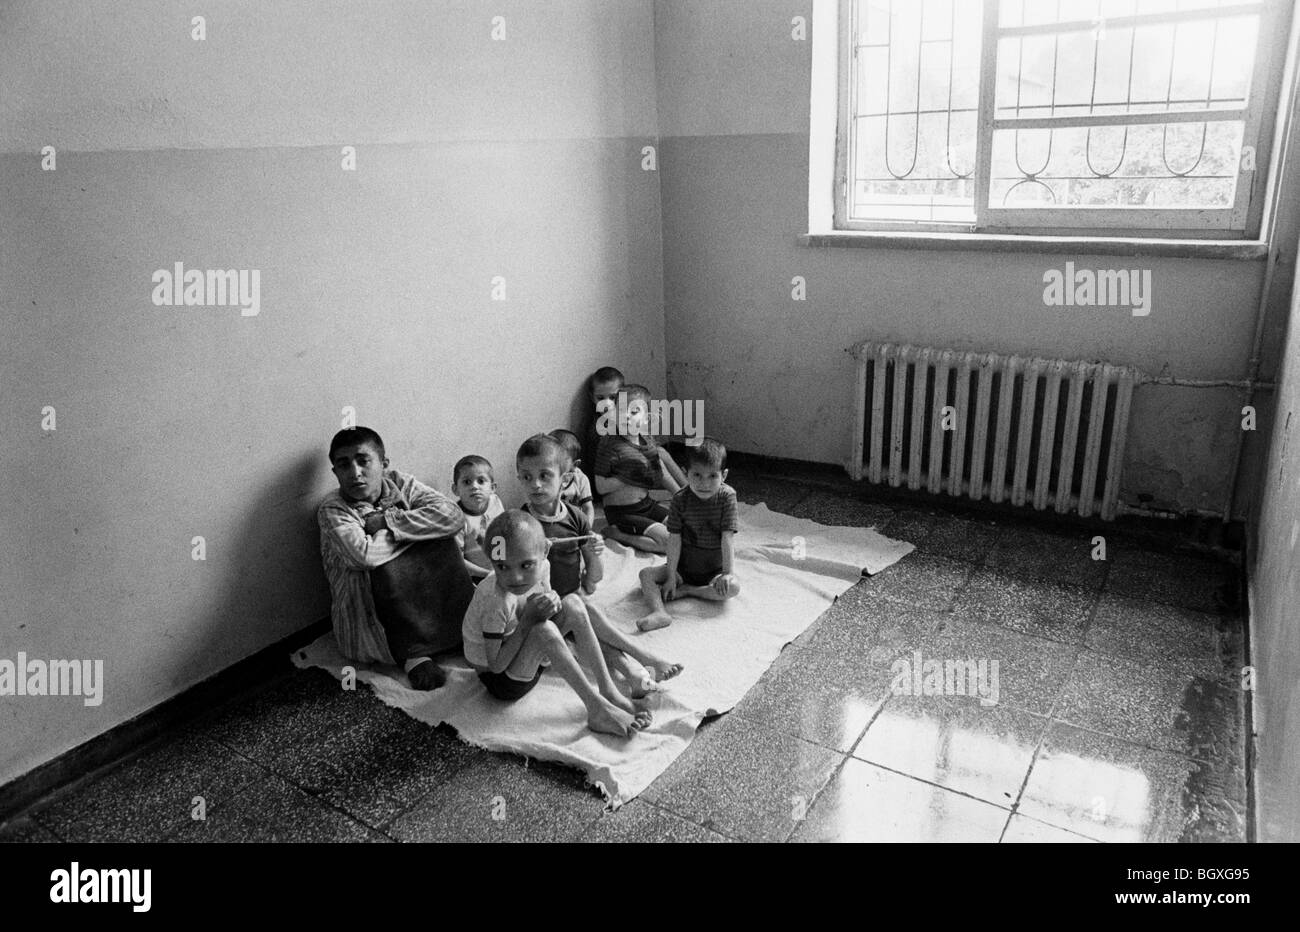 HOSPITAL FOR HANDICAPPED CHILDREN, SHKODRA, ALBANIA, SEP' 91. Stock Photo